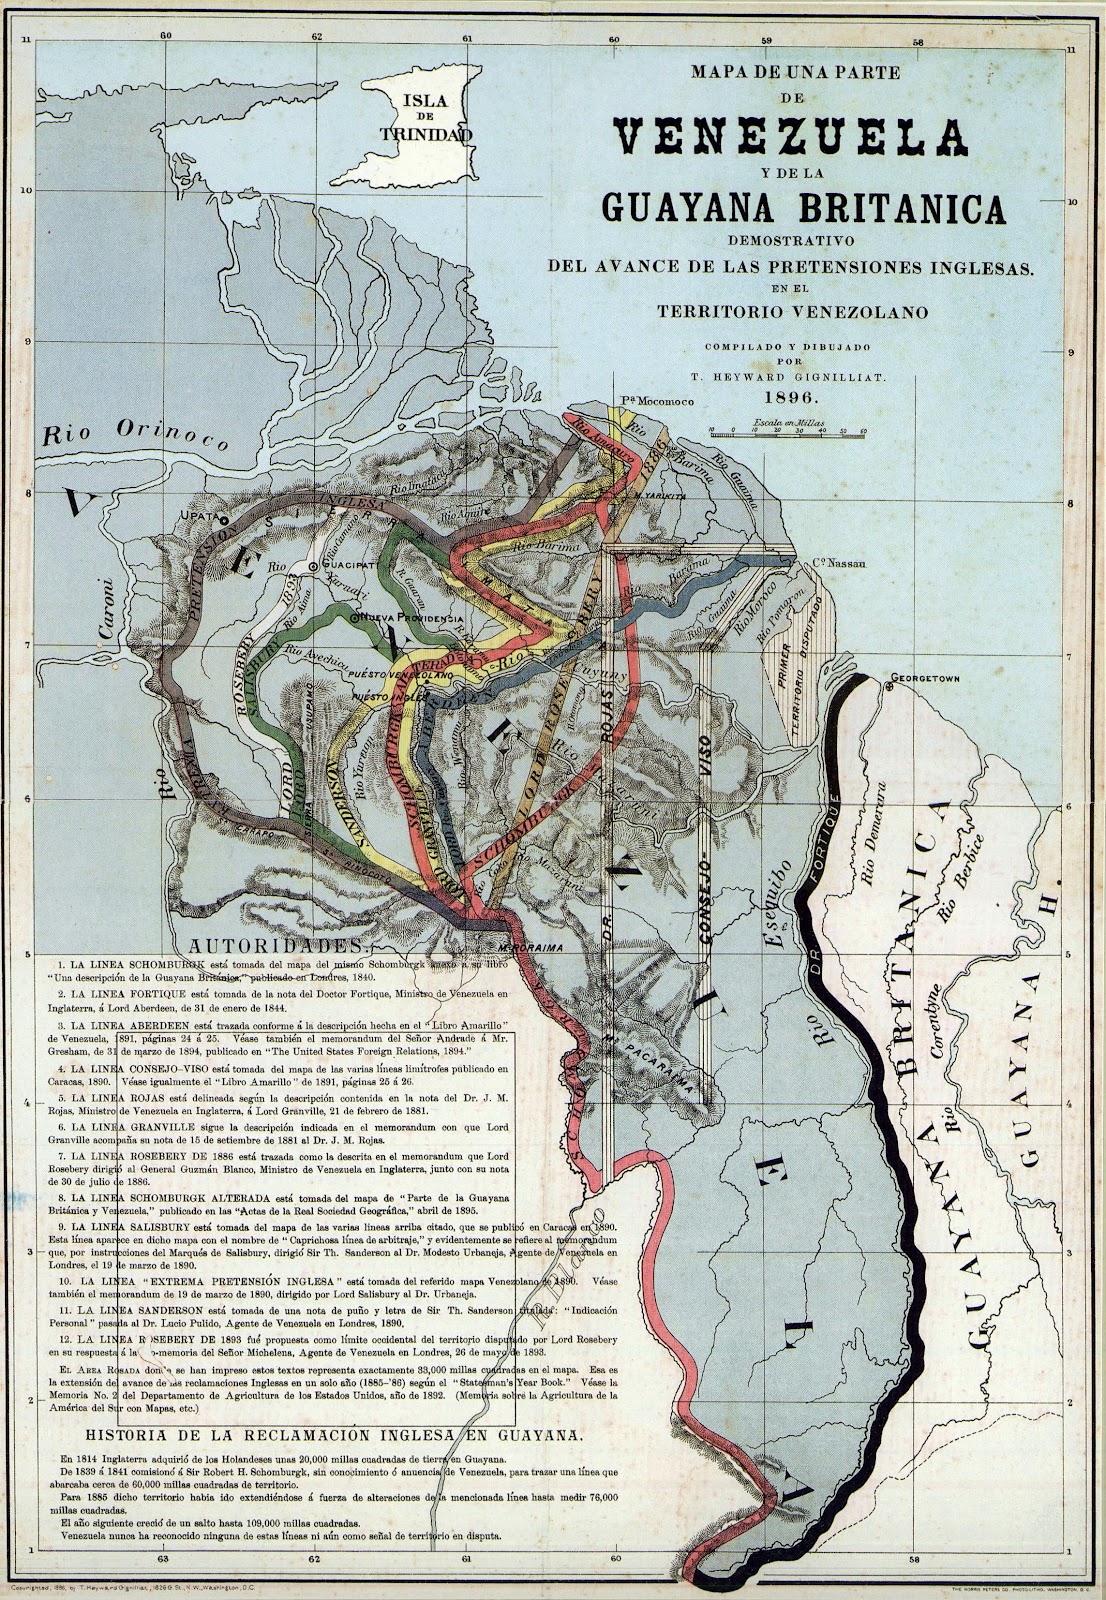 Mapa_de_una_parte_de_Venezuela_y_de_la_Guayana_Britanica 1896